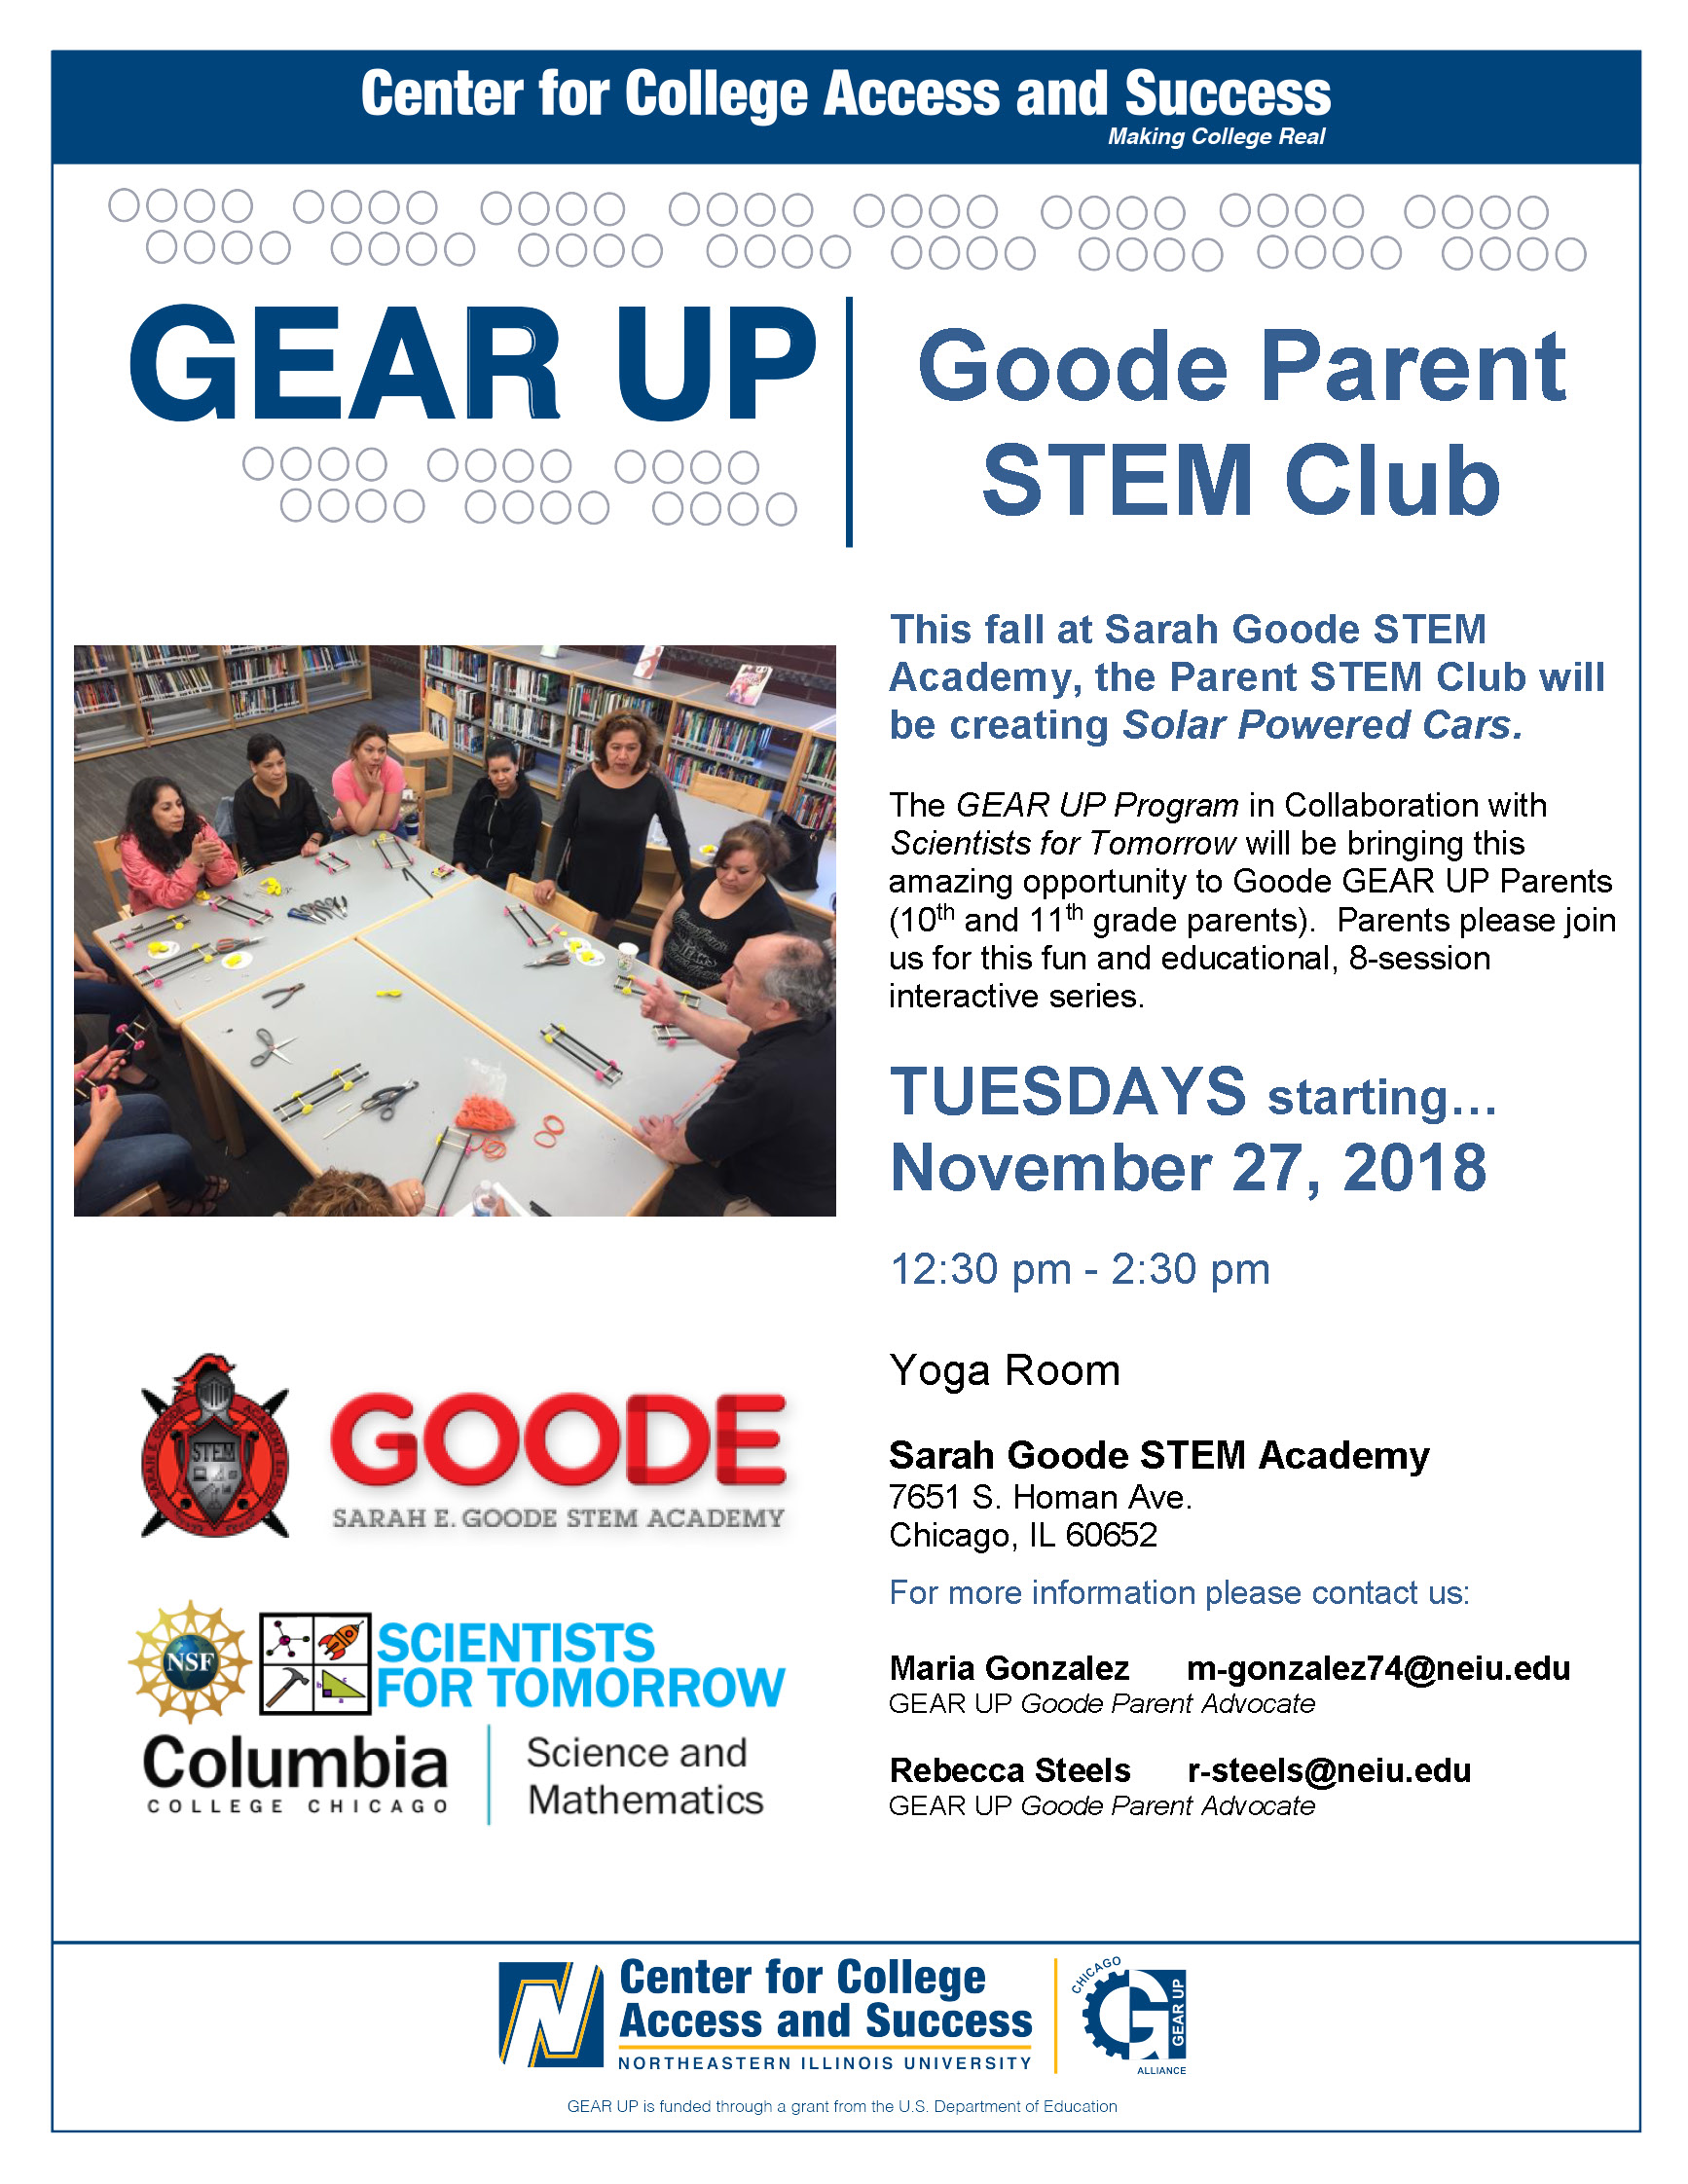 Gear UP Goode Parent STEM Club